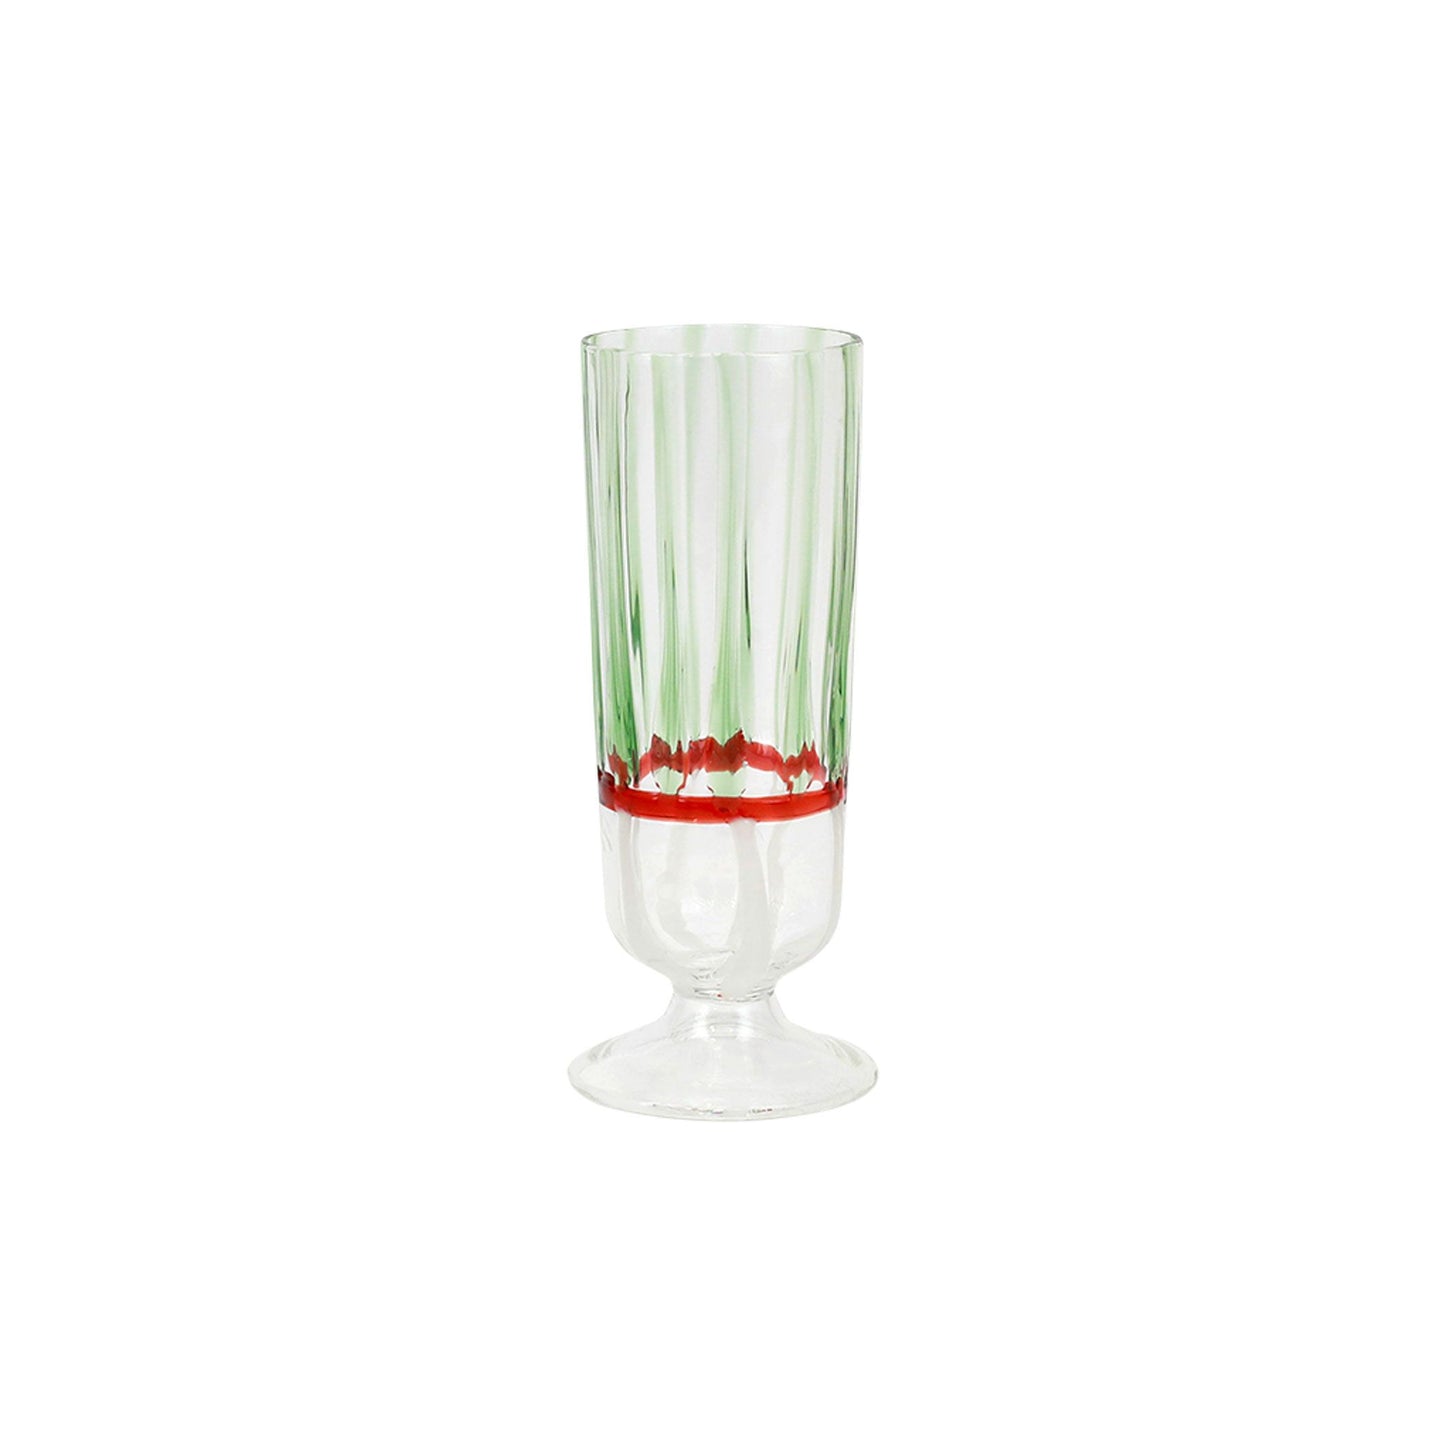 Vietri Garland Champagne Glass - 6.5"H, 8oz Italian Borosilicate Glassware